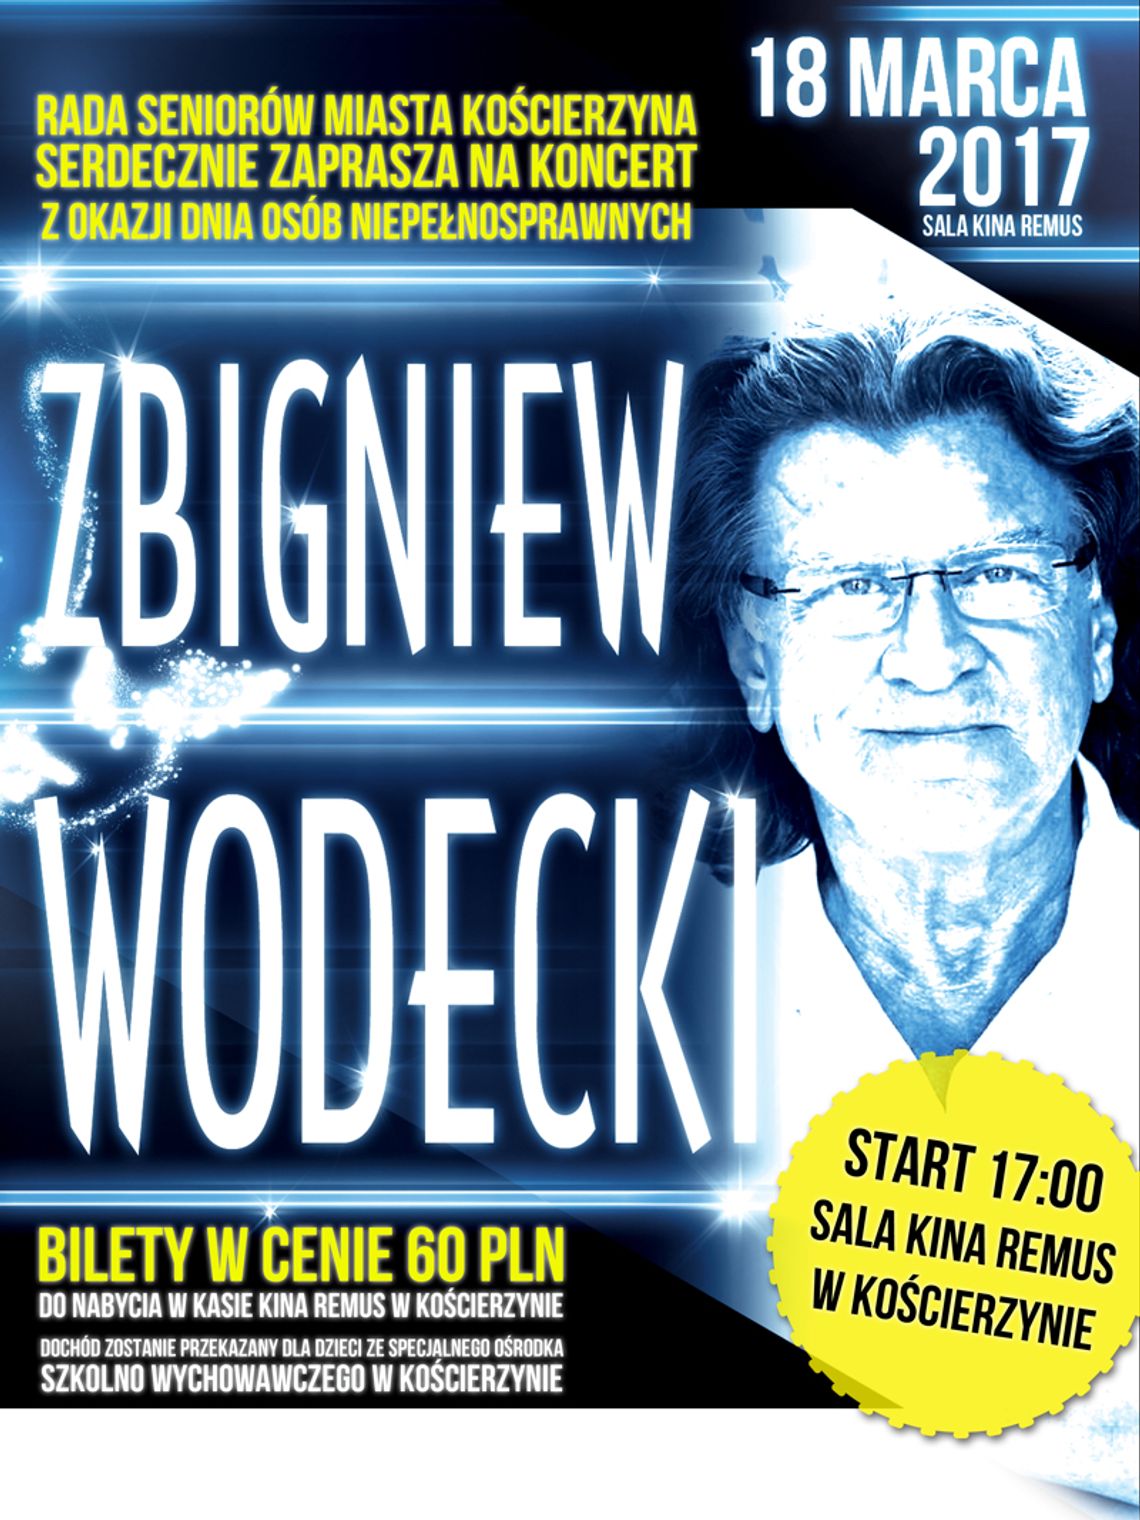 Rada Seniorów miasta Kościerzyna zaprasza na koncert Zbigniewa Wodeckiego!